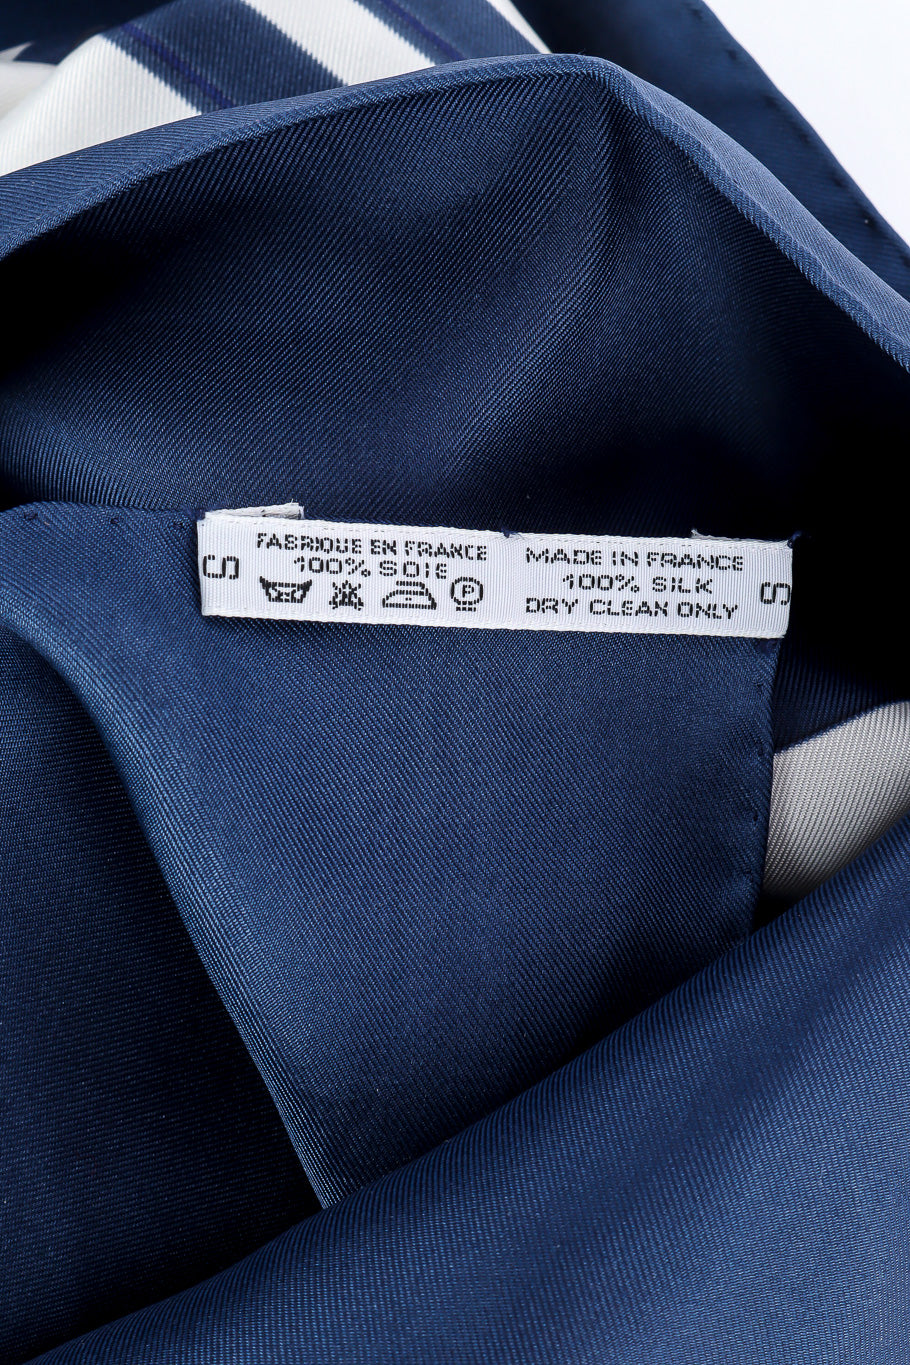 Brides de gala scarf by Hermes Photo of fabric label. @recessla